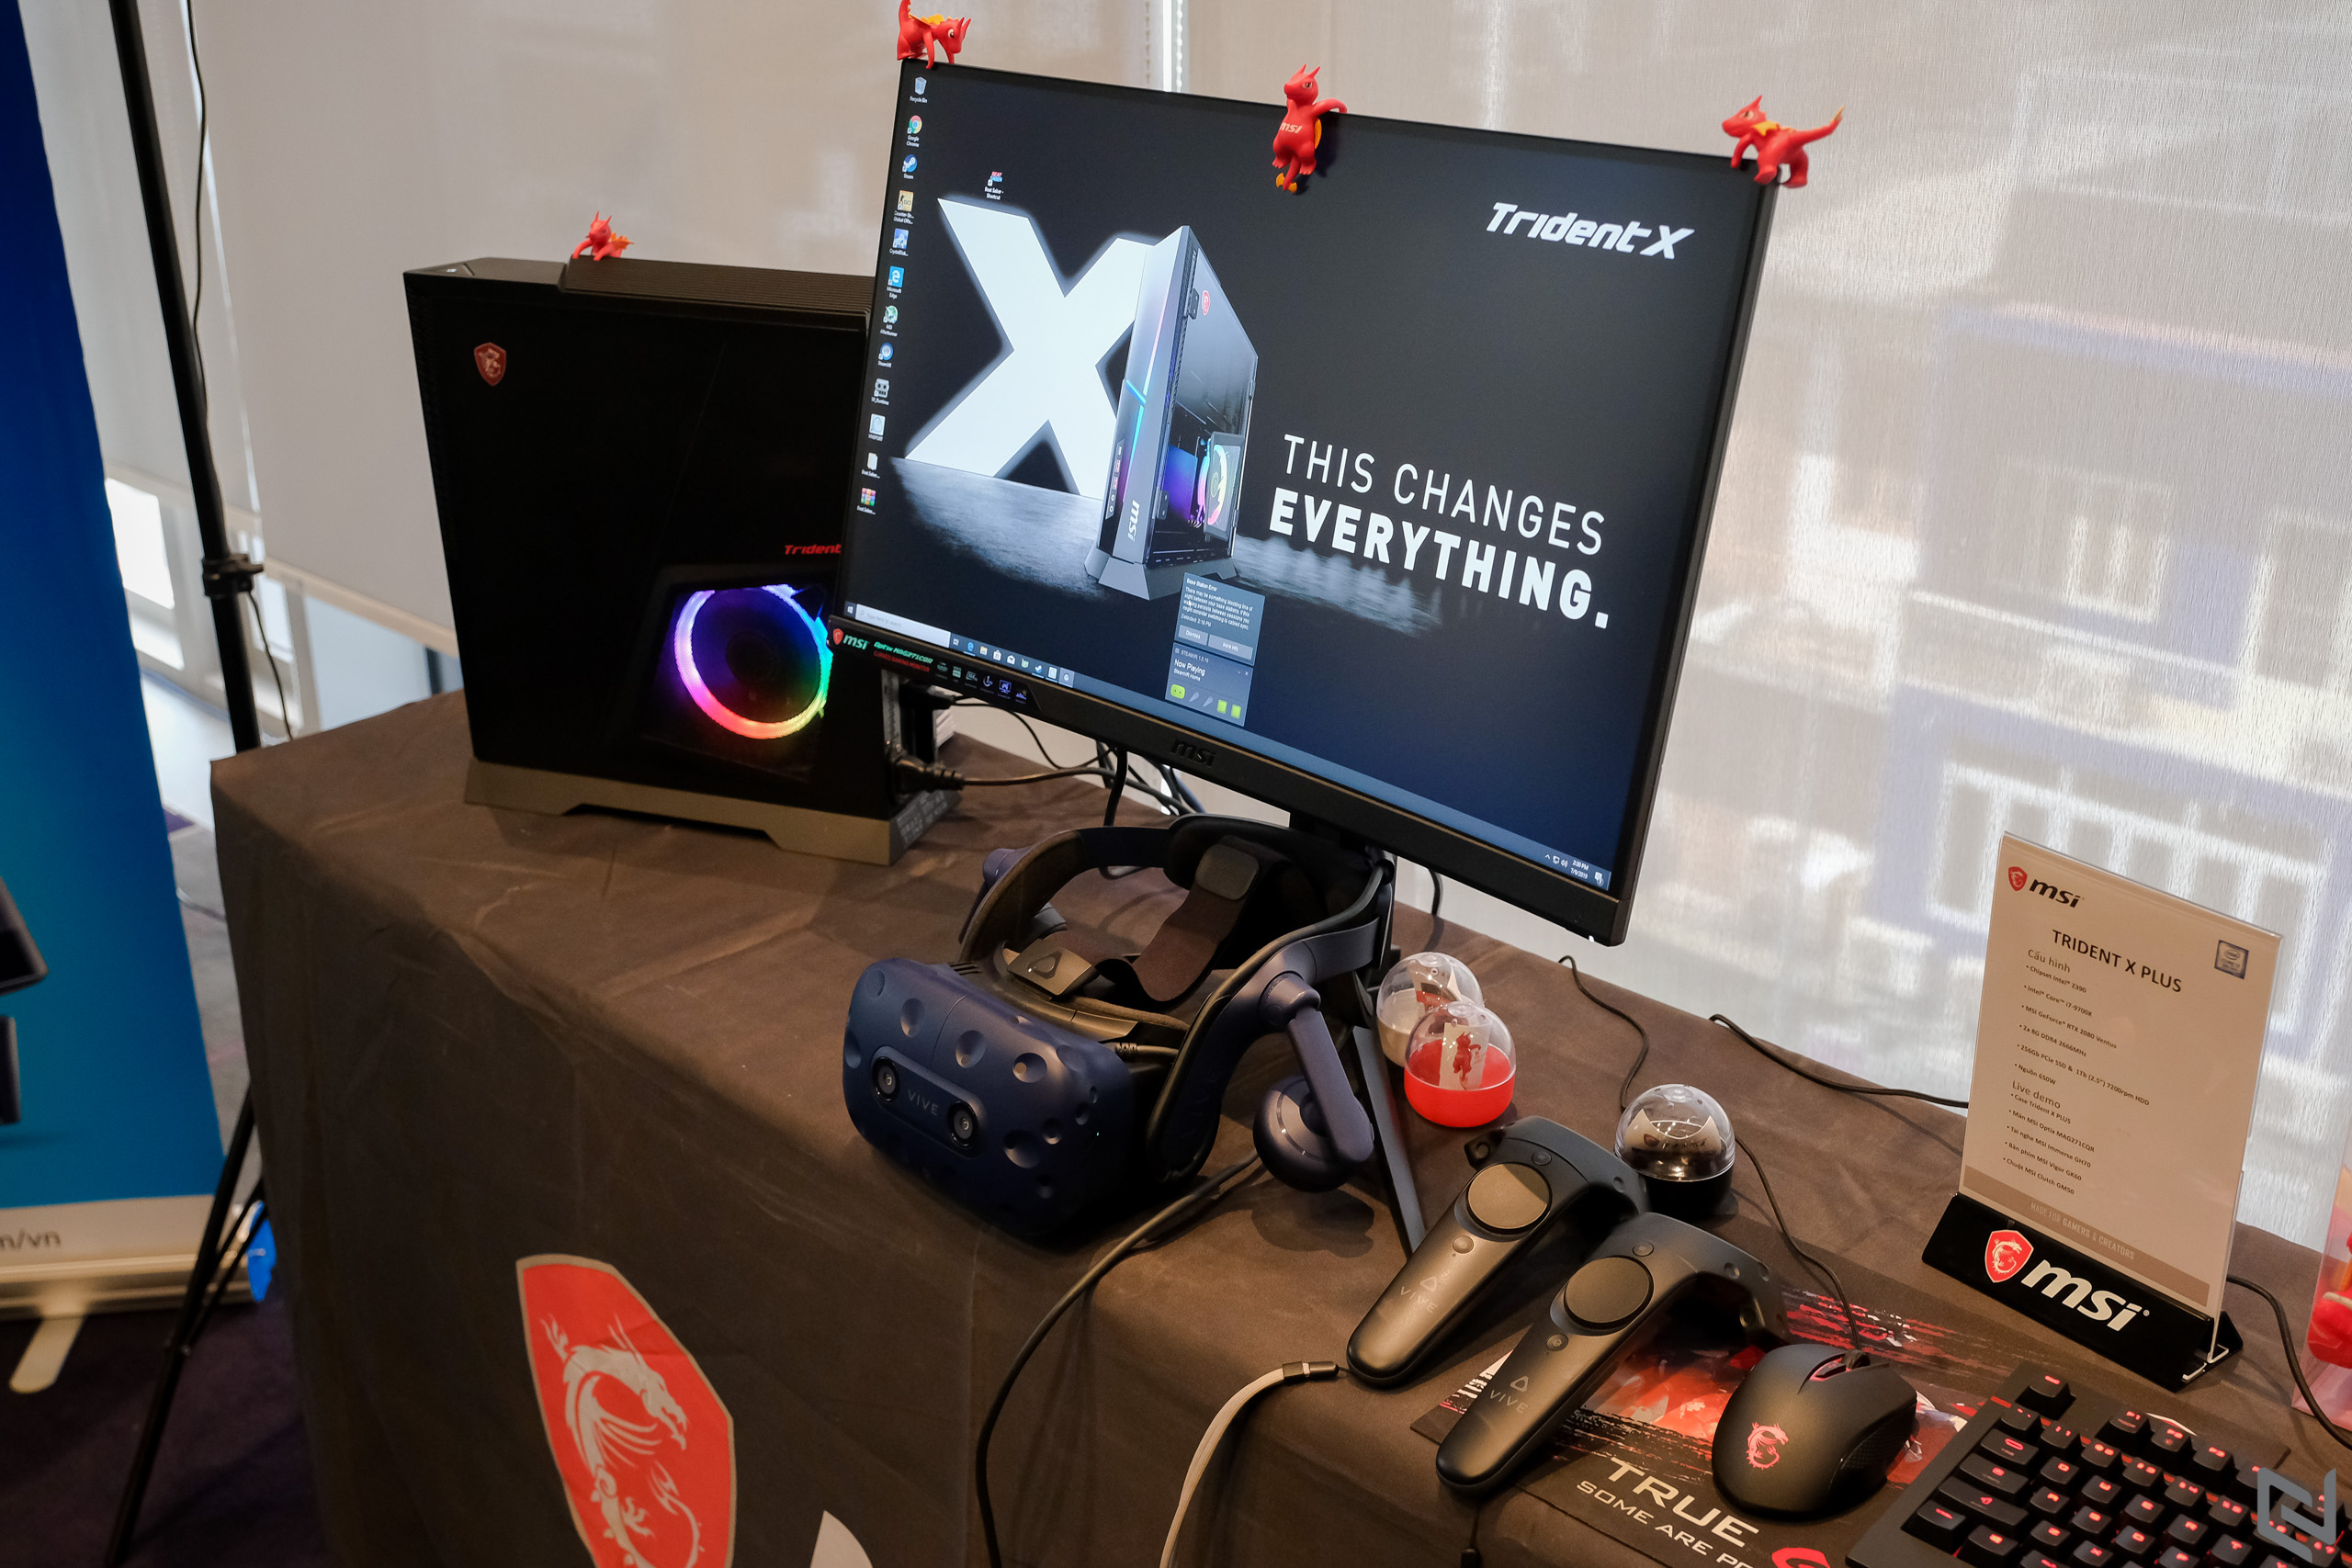 MSI ra mắt dải gaming desktop Trident cho game thủ và Mini PC Cubi cho doanh nghiệp